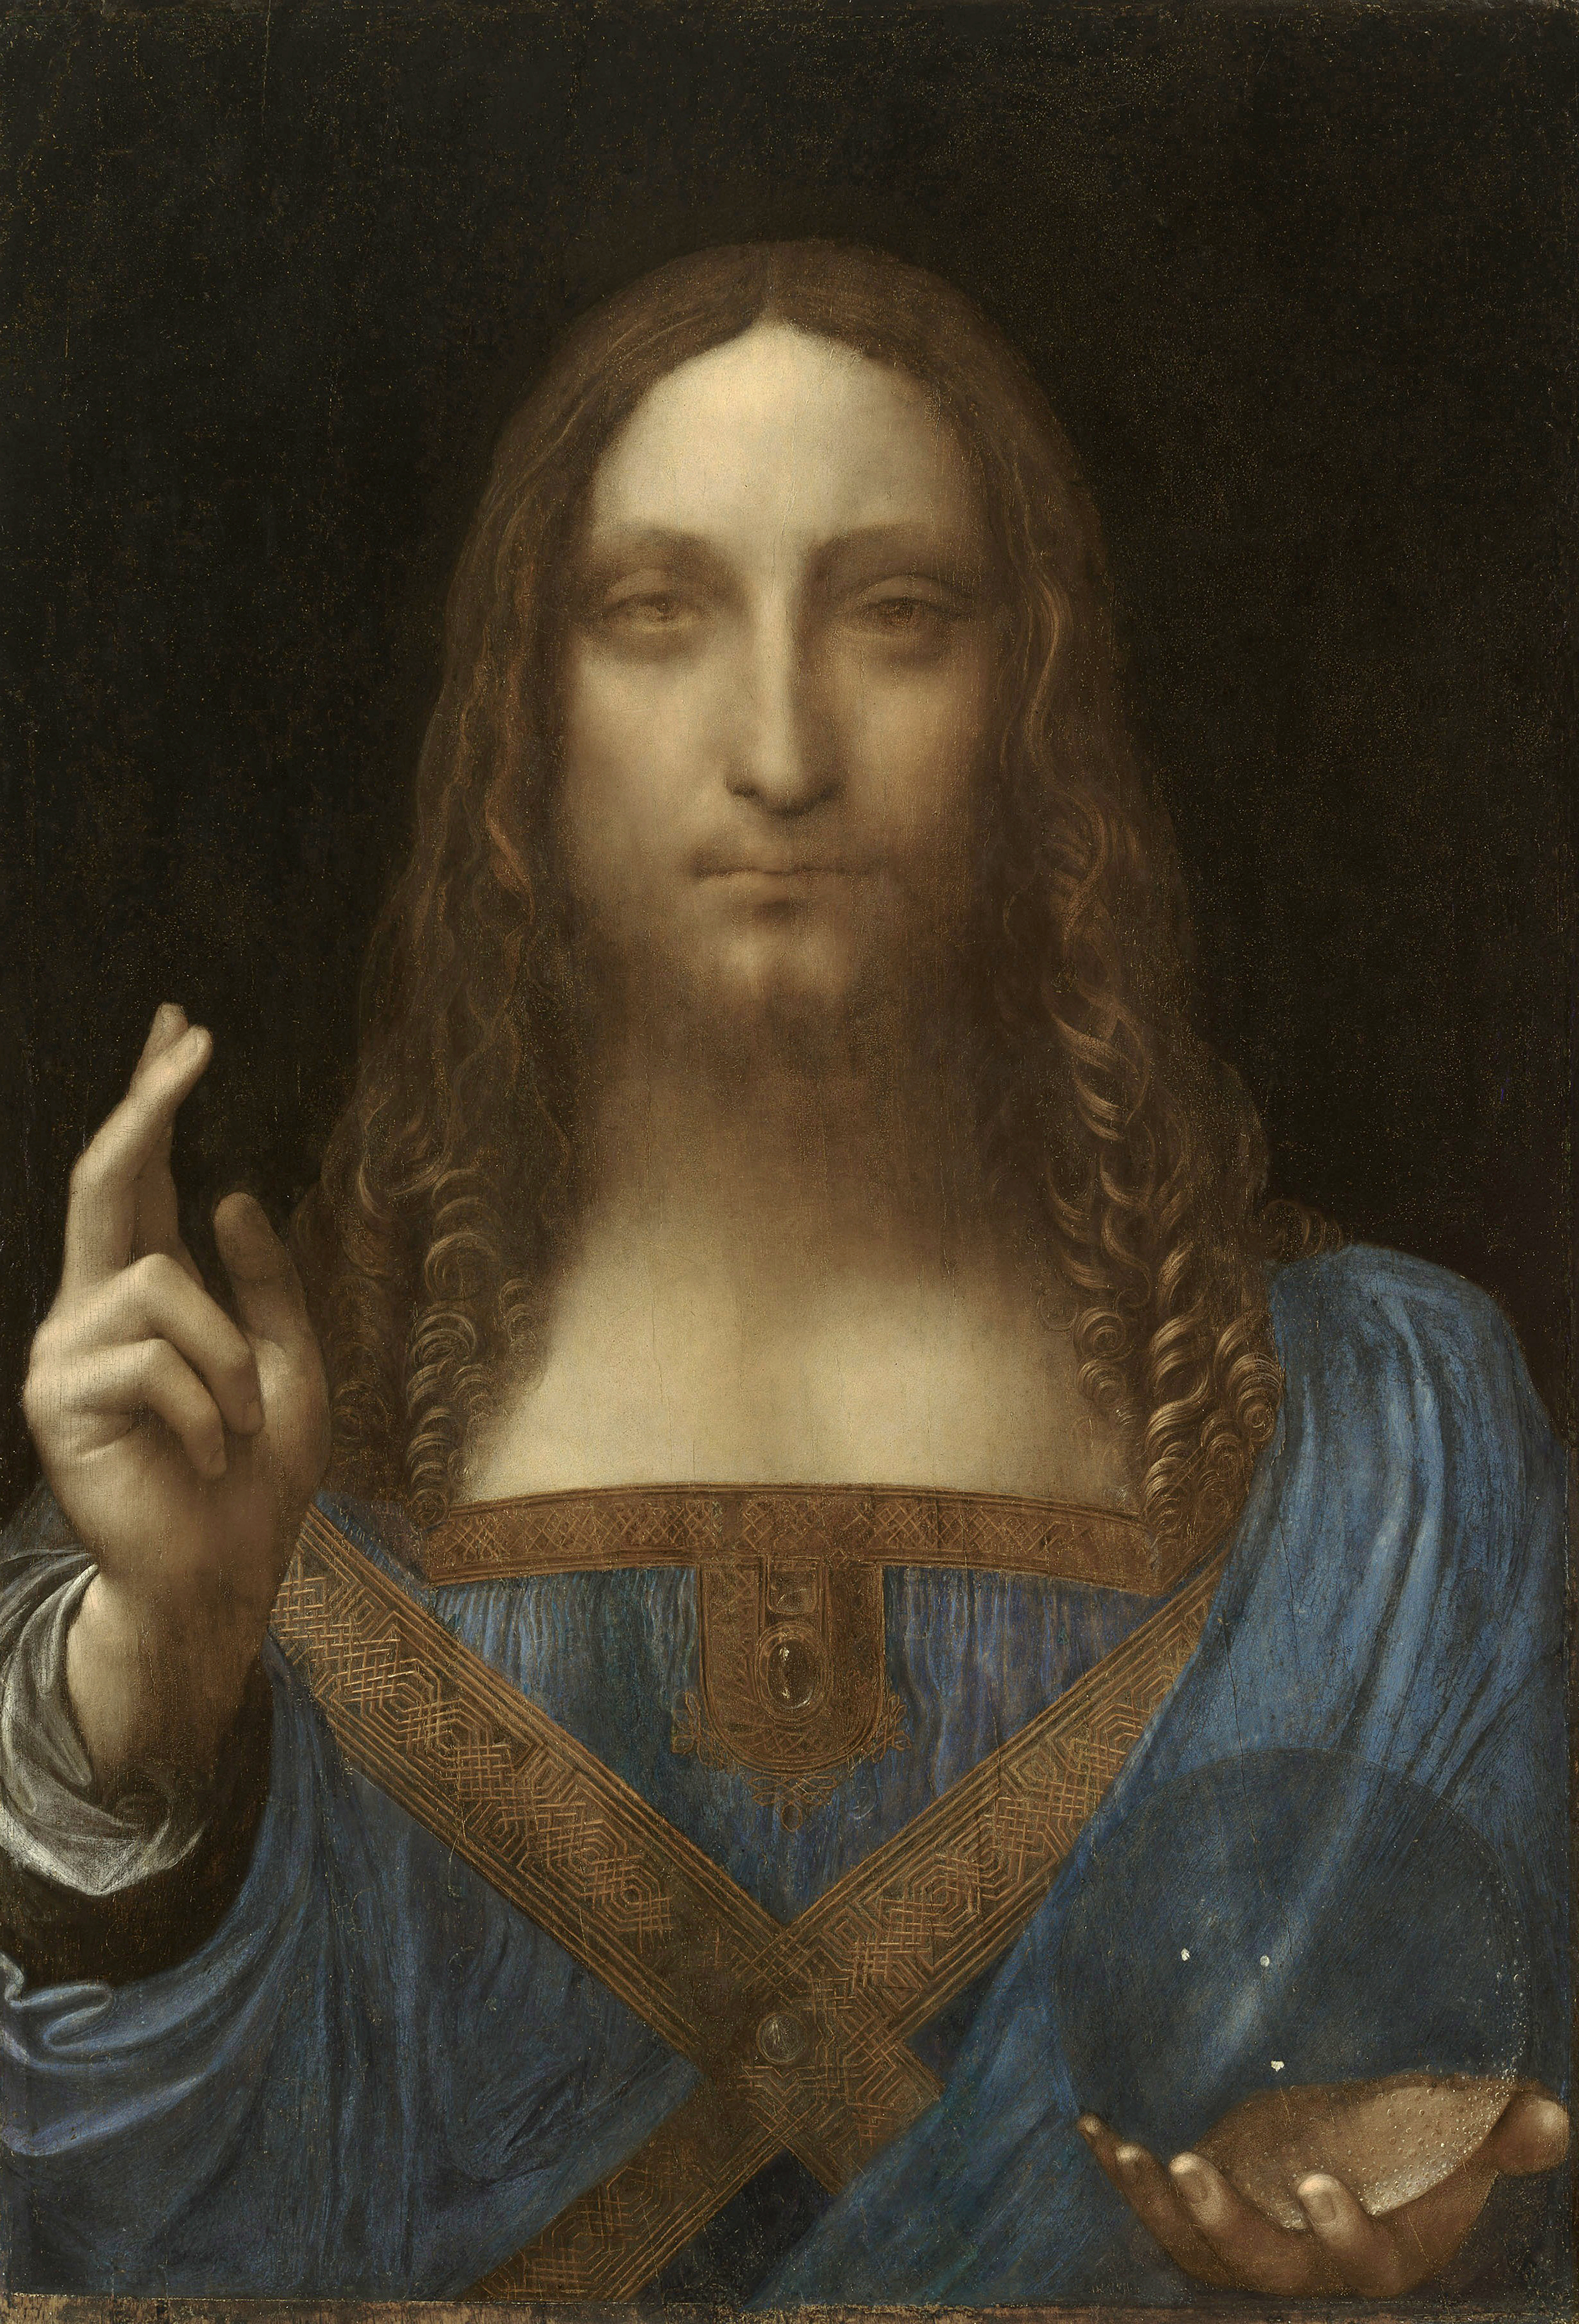 Leonardo_da_Vinci_Salvator_Mundi_c1500_oil_on_walnut_454__656_cmjpg